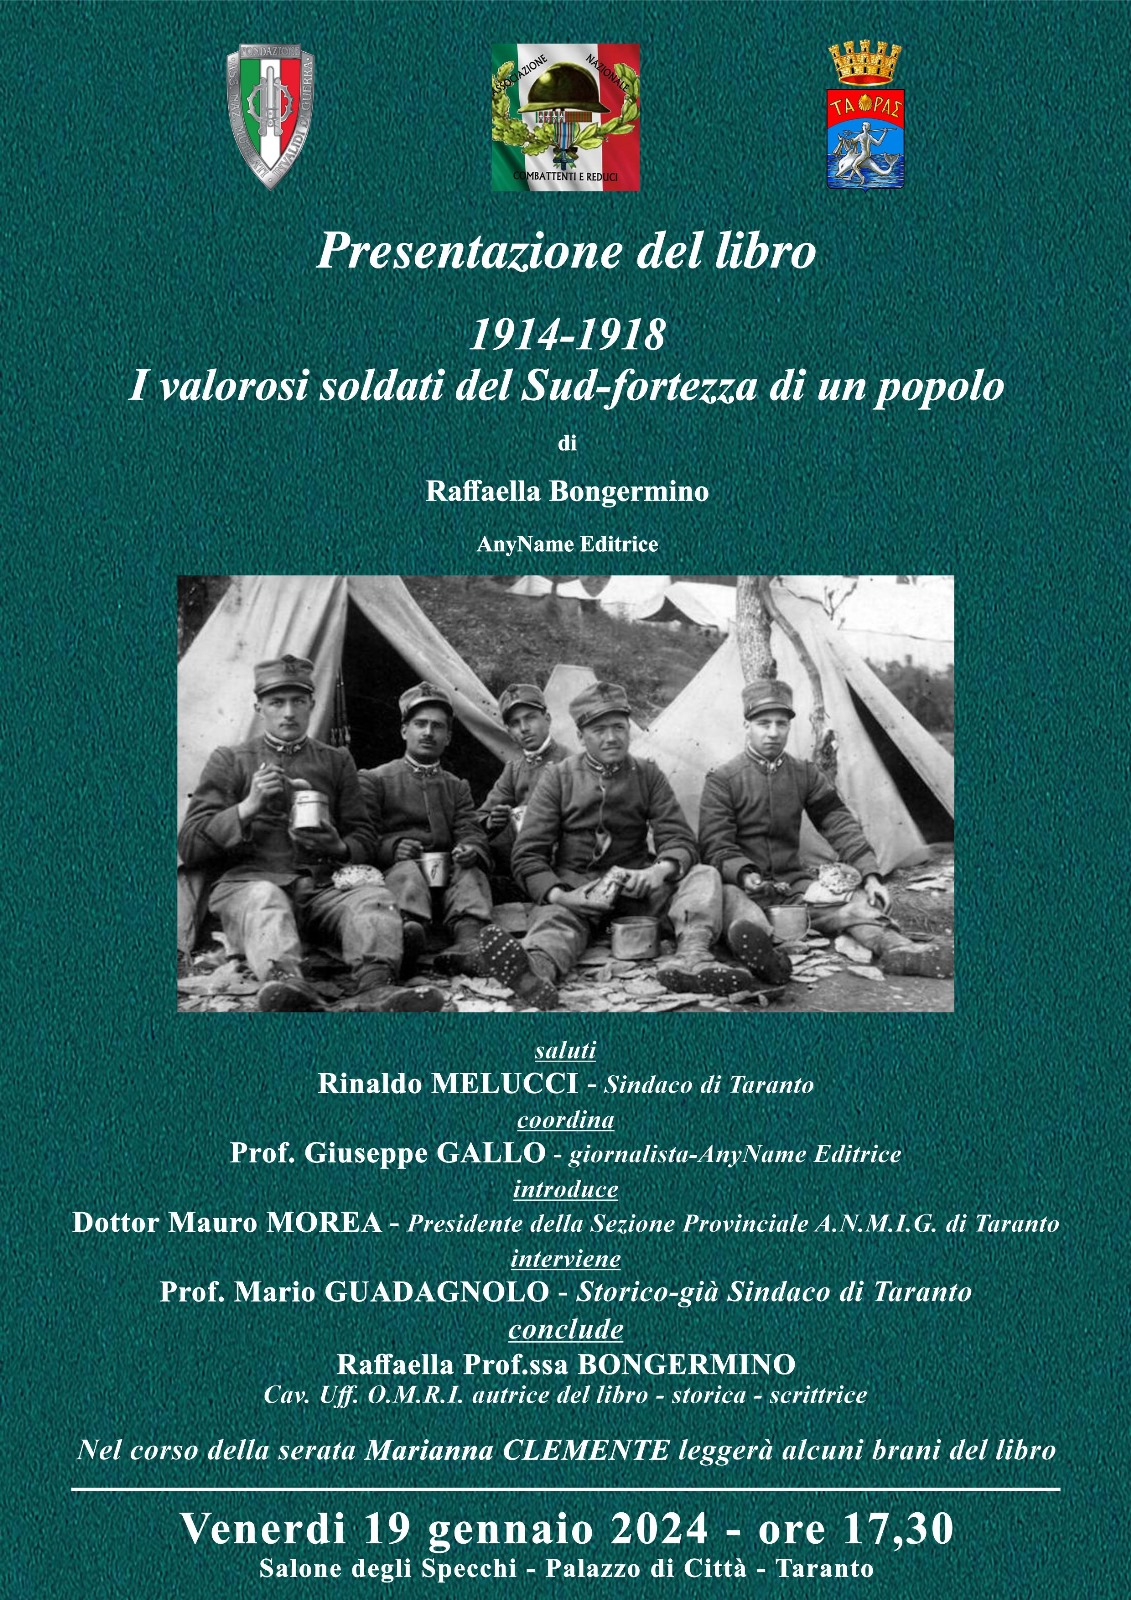 Presentazione del libro della professoressa Raffaella Bongermino “I valorosi soldati del Sud-fortezza di un popolo” a Taranto